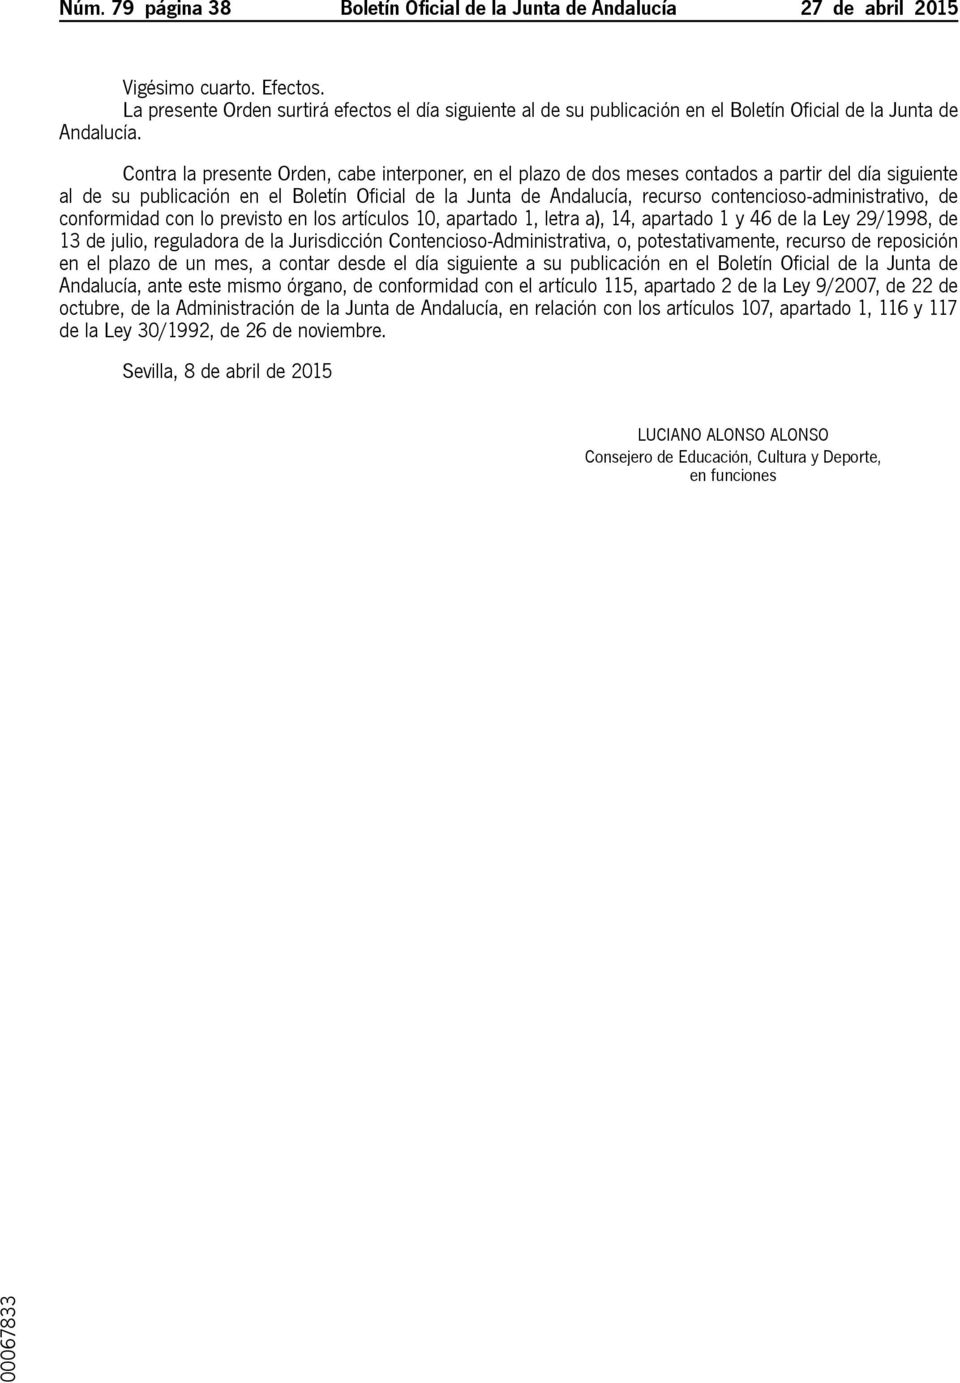 Contra la presente Orden, cabe interponer, en el plazo de dos meses contados a partir del día siguiente al de su publicación en el Boletín Oficial de la Junta de Andalucía, recurso